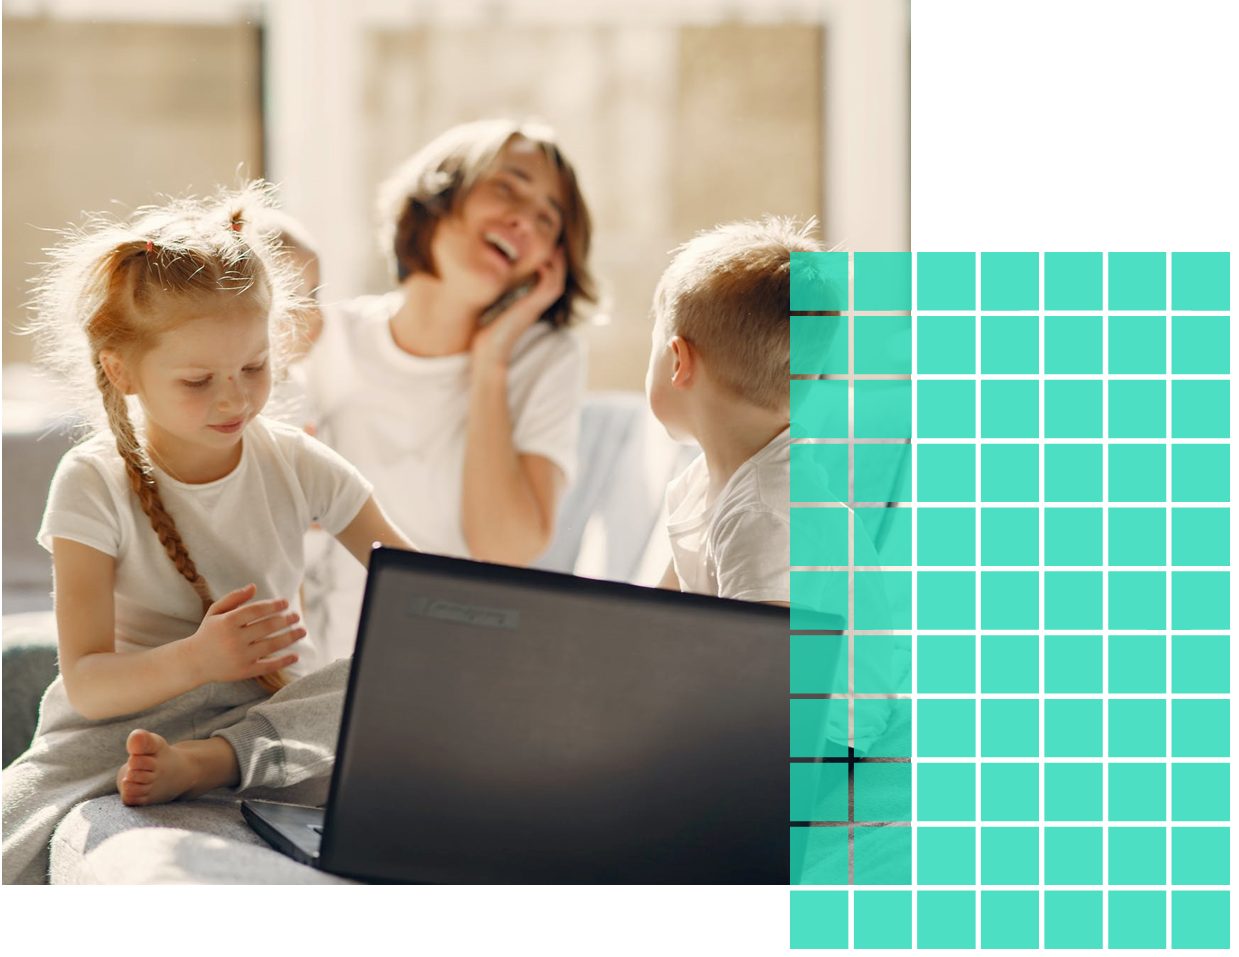 Imagen en la que aparece una madre junto a sus dos hijos, mientras ella habla distendidamente por teléfono, los niños están utilizando un ordenador portátil